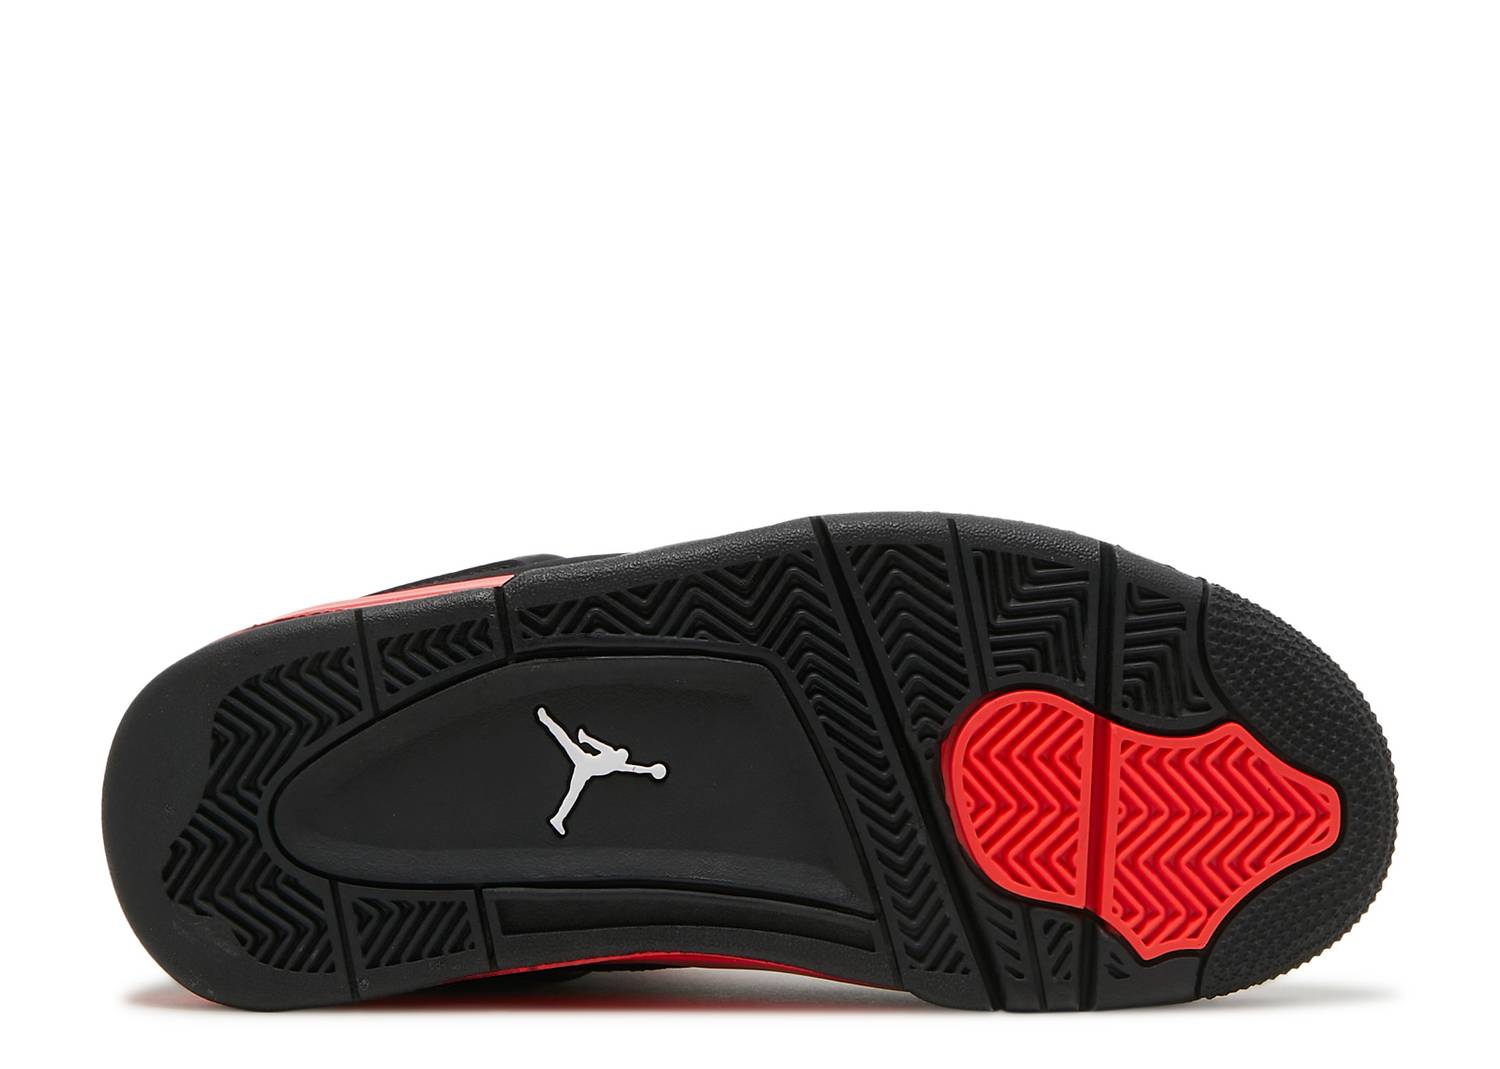 Air Jordan lV (4) Retro 'Red Thunder' – Kicks & Drip